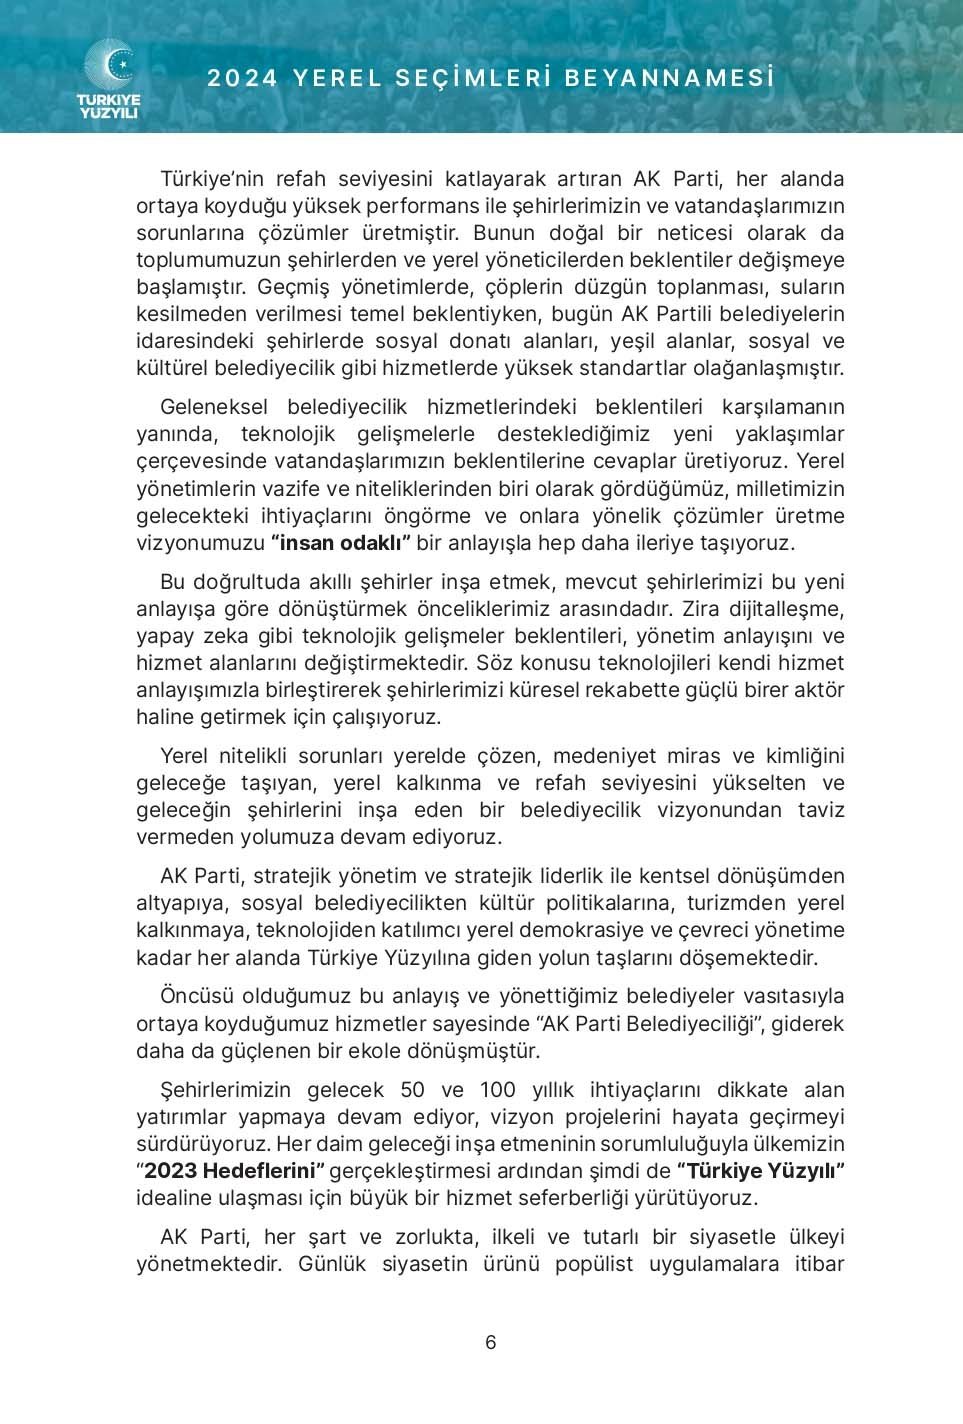 Gerçek Belediyecilik: İşte 8 başlıkta AK Parti’nin seçim beyannamesi...